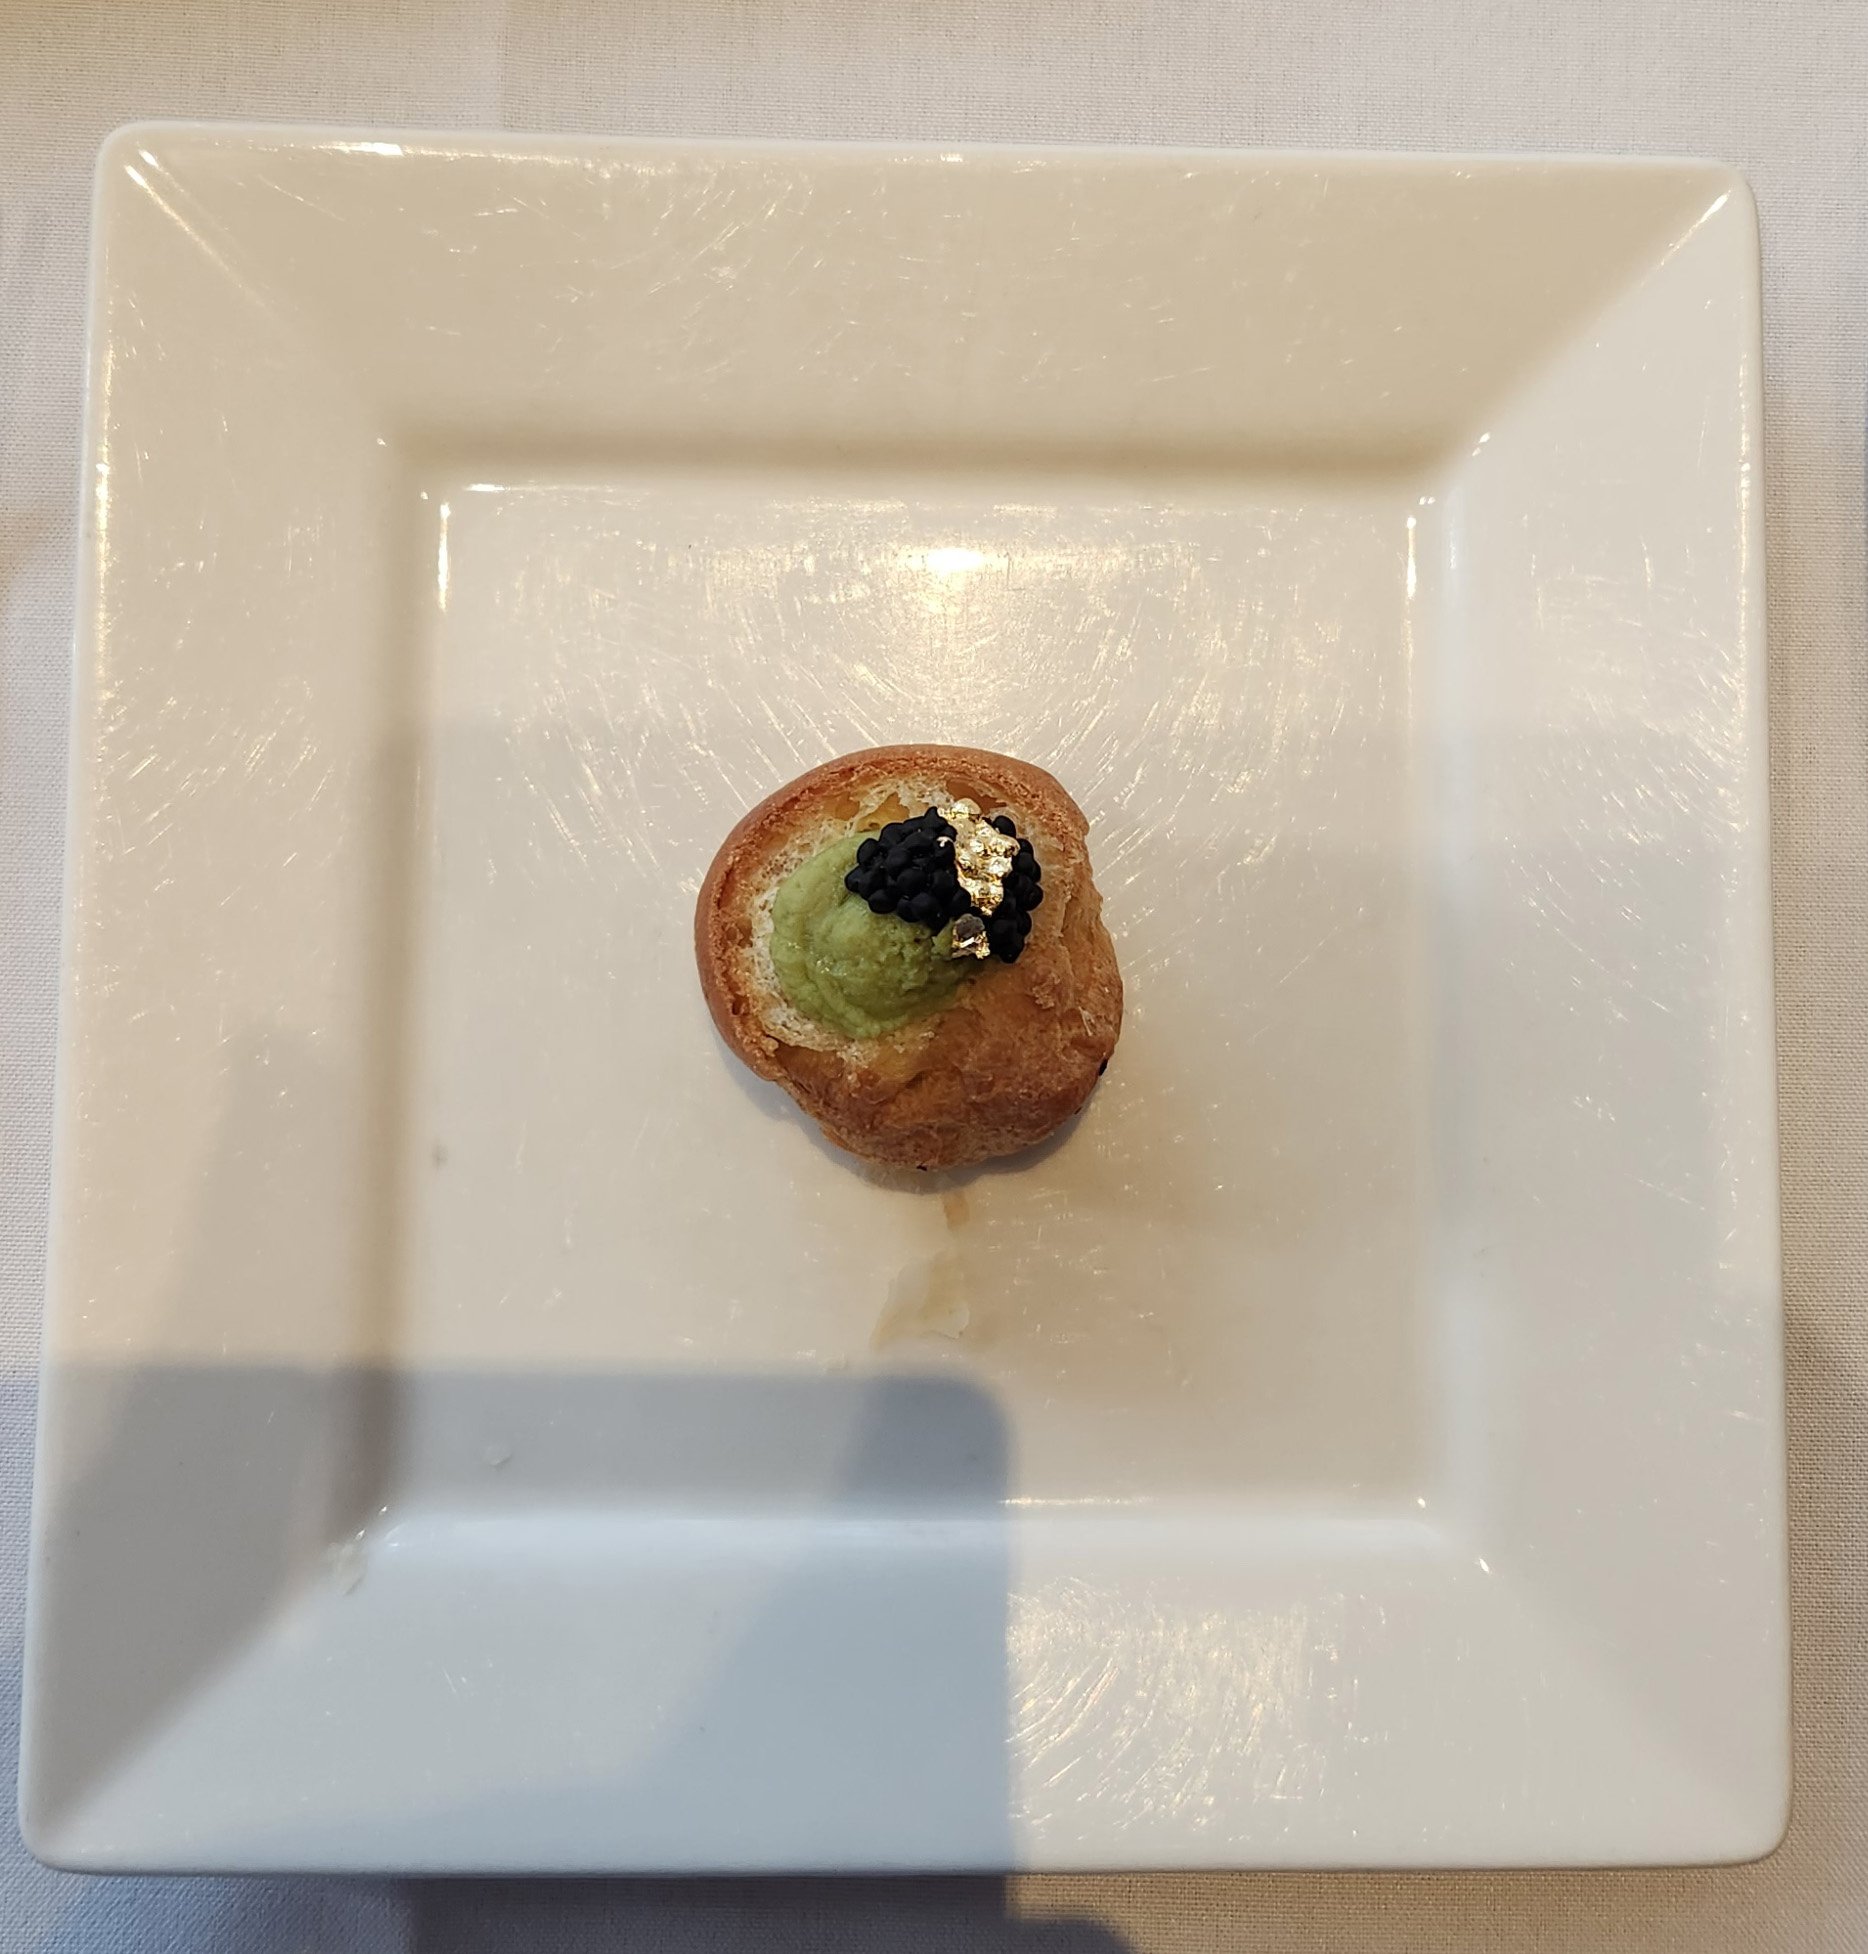 Wasabi pea petit choux and caviar